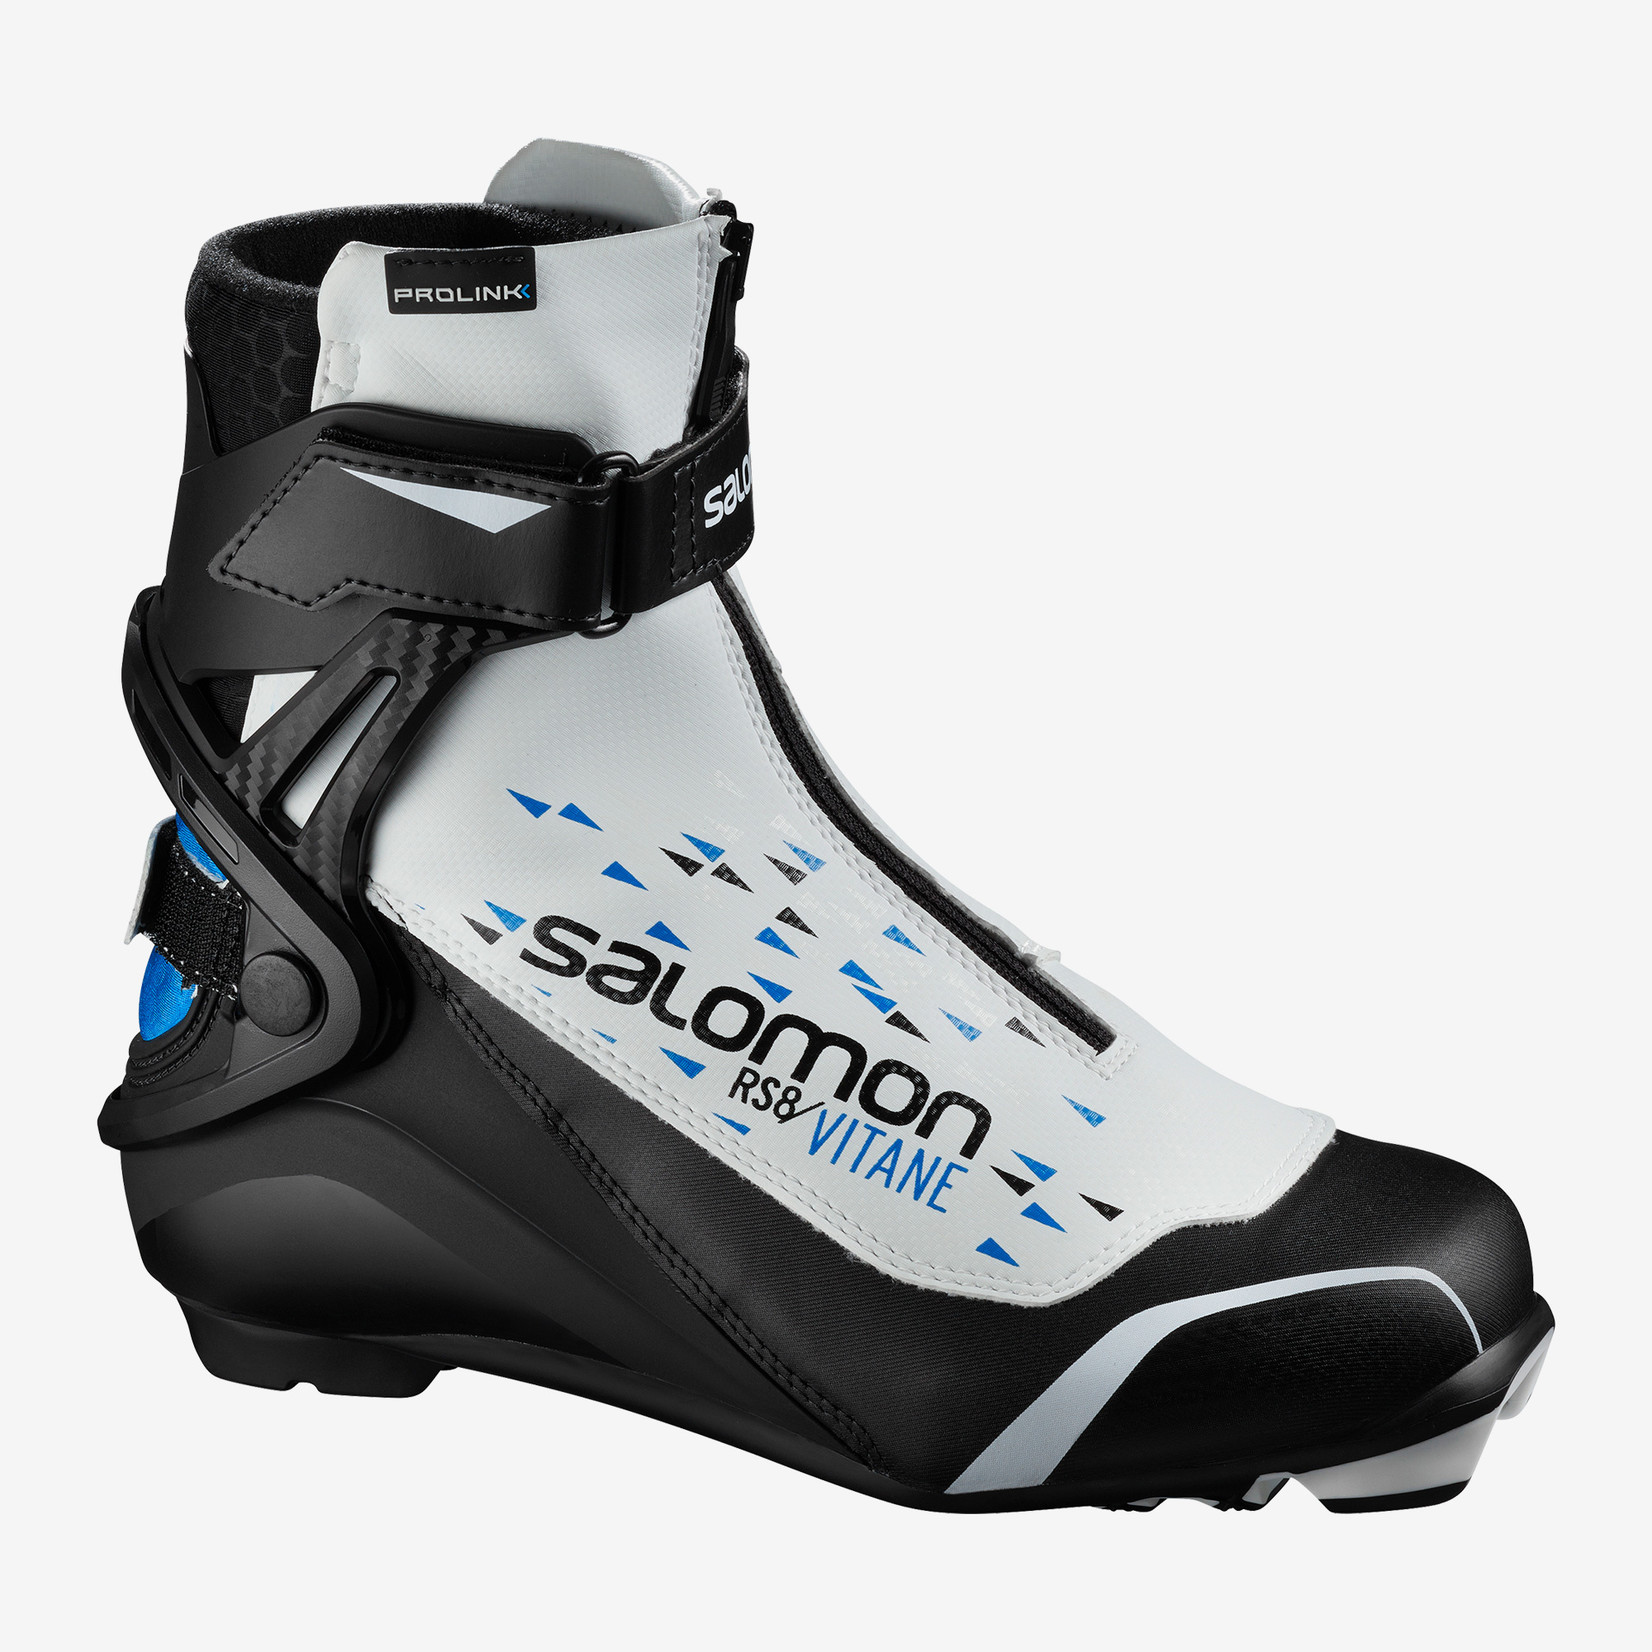 Salomon RS8 Vitane Prolink Women's Skate Ski Boots